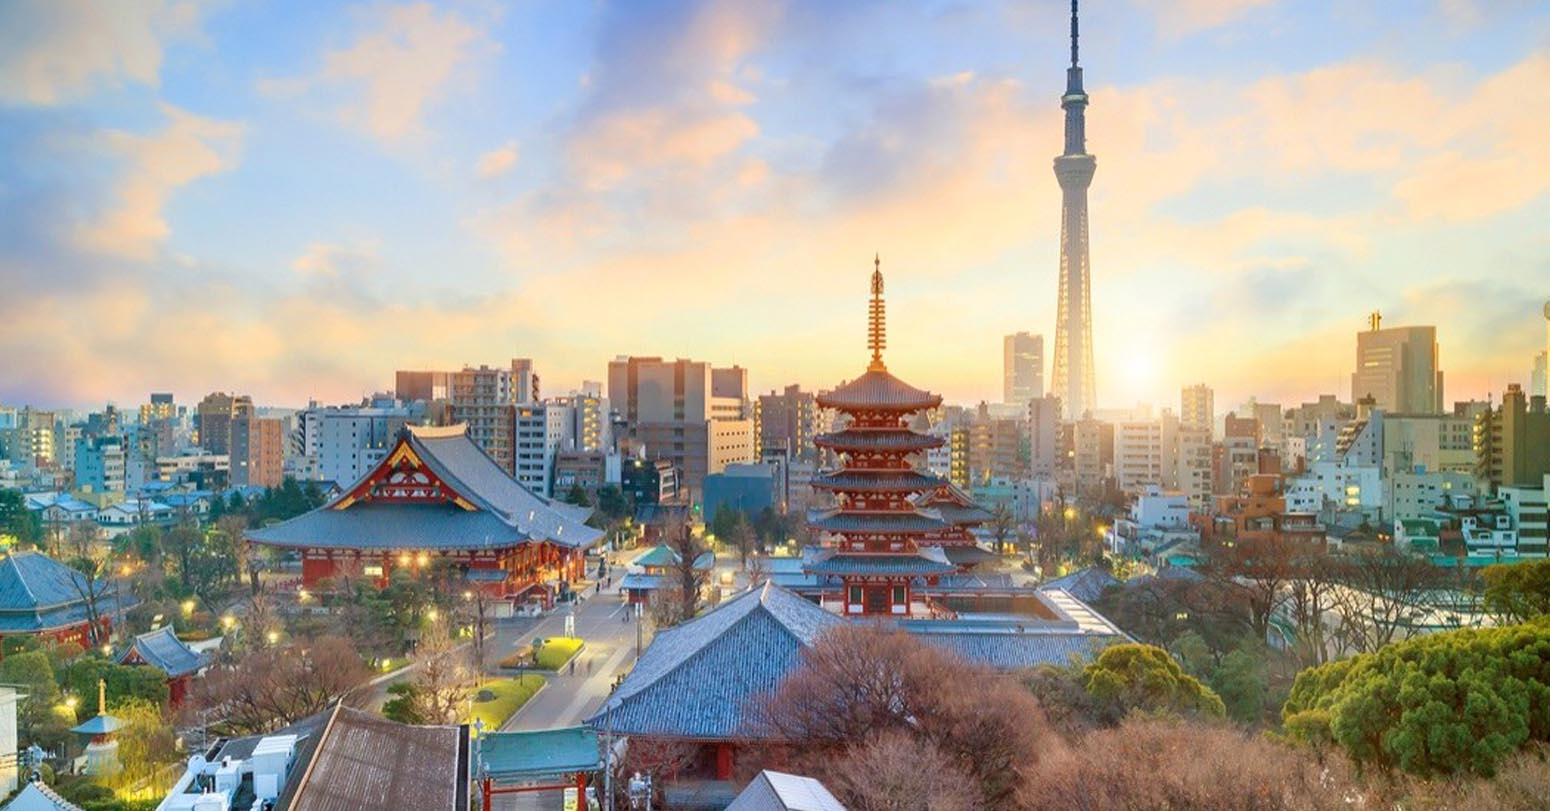 जापानको जनसंख्या घट्दो अवस्थामा, ६५ वर्षभन्दा माथिको जनसंख्यामा भने वृद्धि